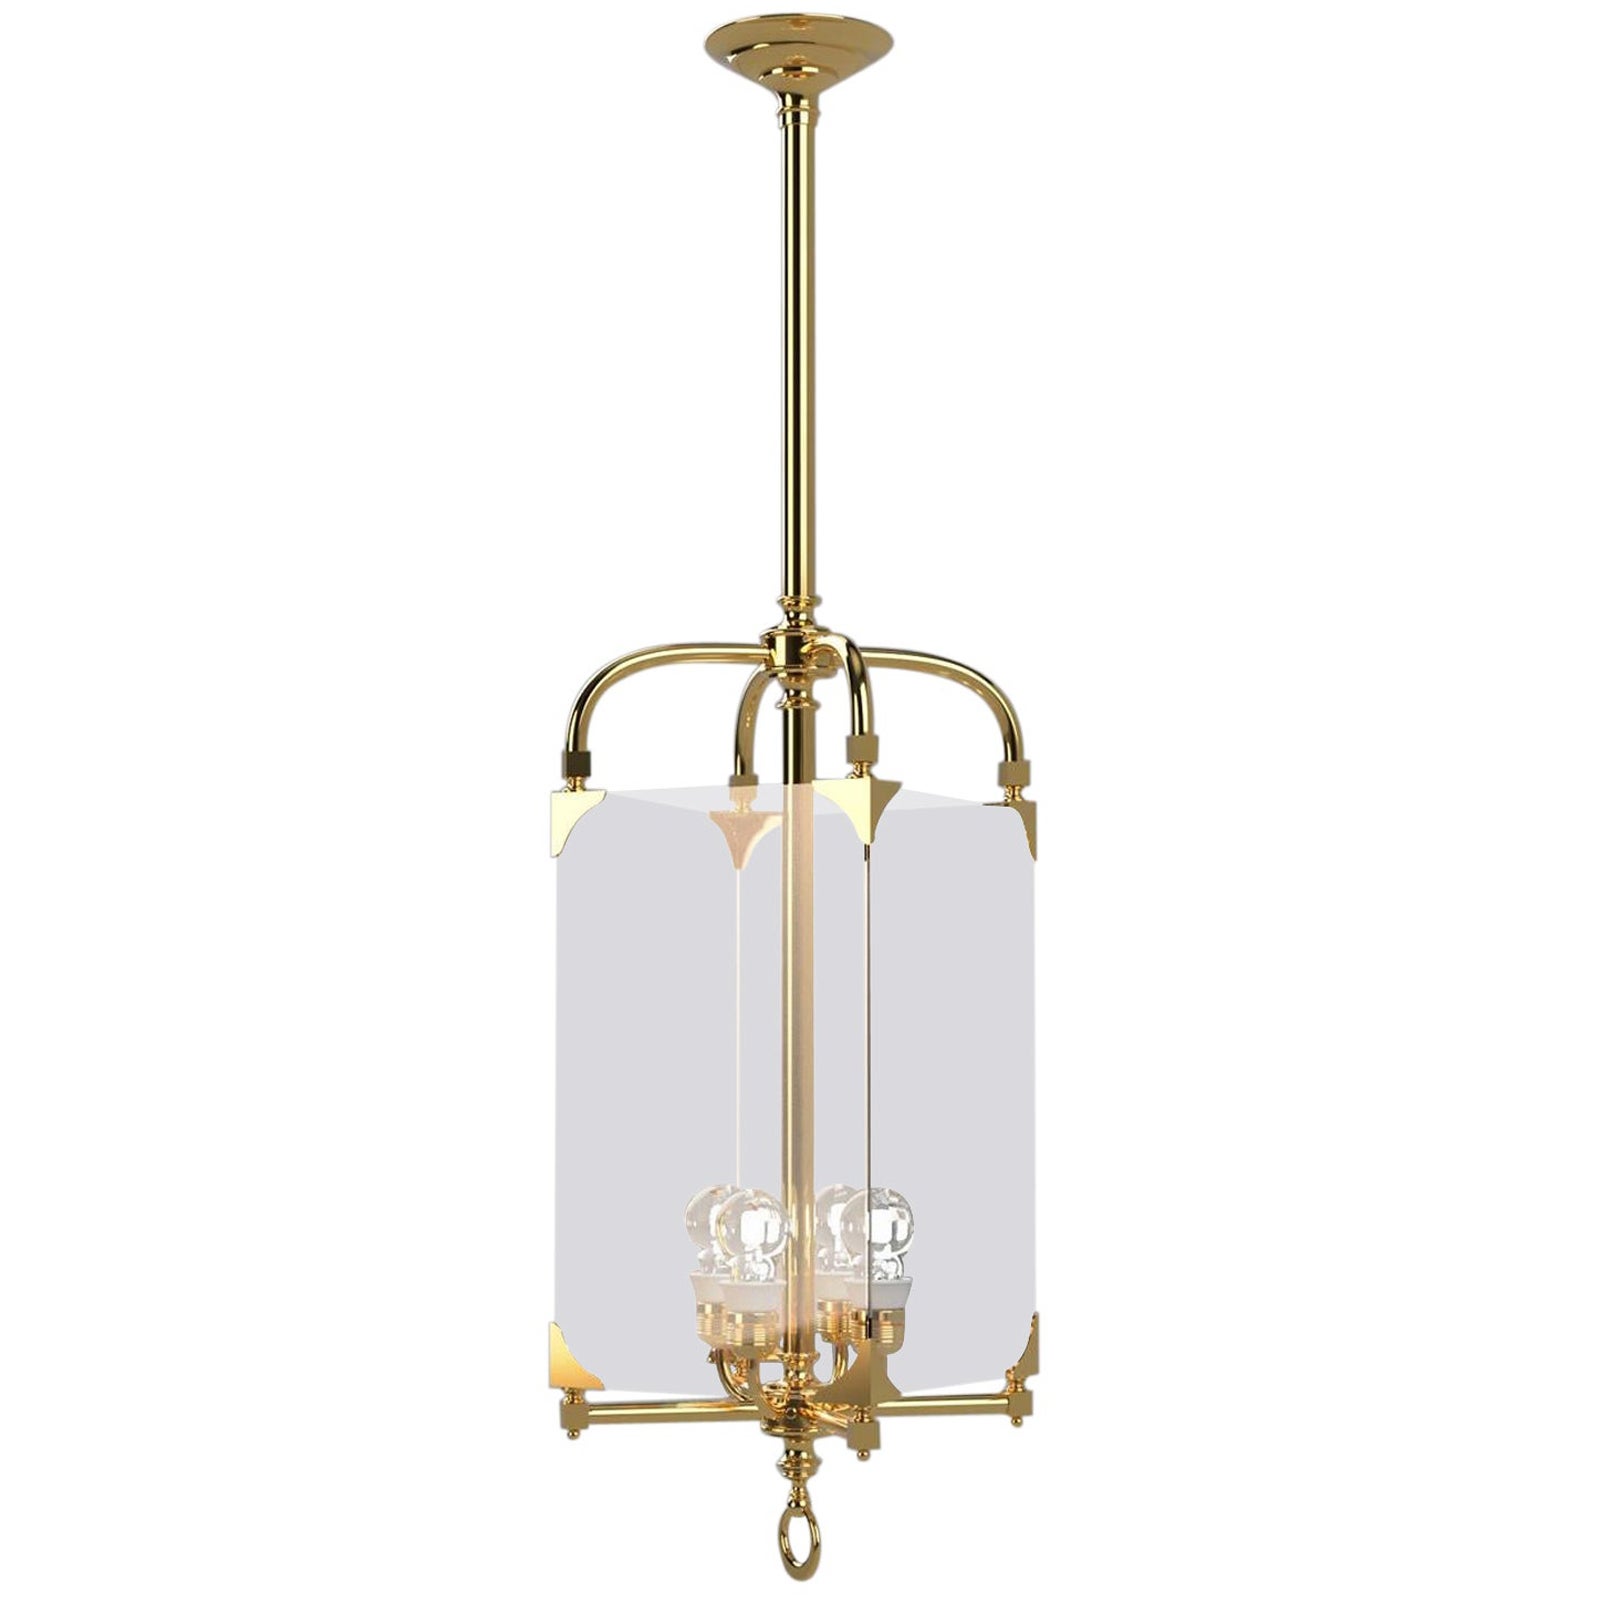 Adolf Loos Secession Jugendstil Glass and Brass Lantern Chandelier Re-Edition For Sale